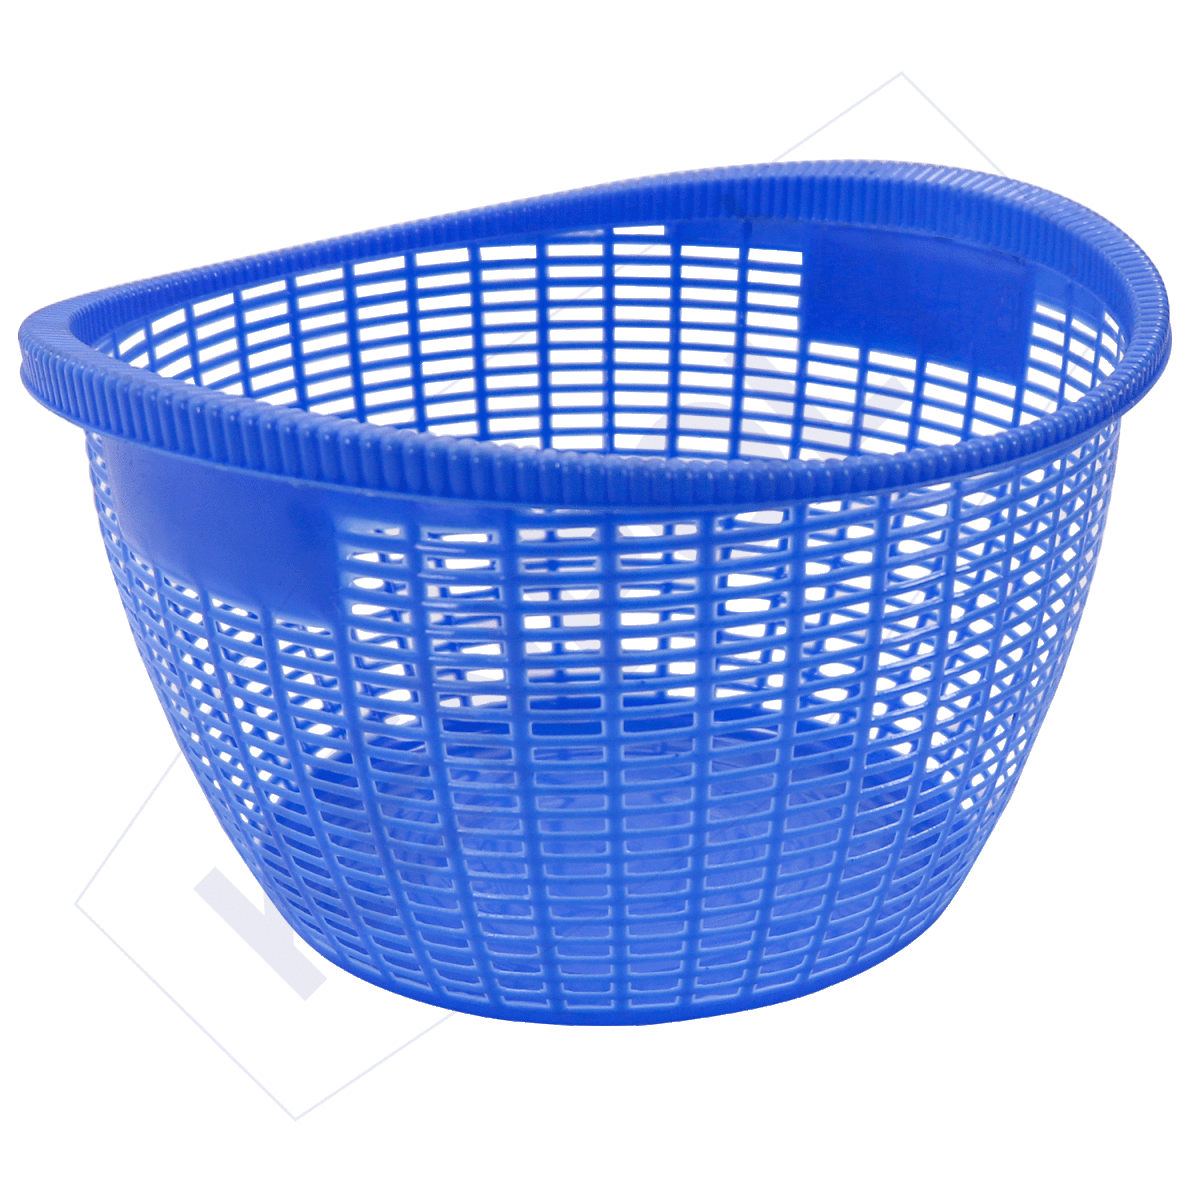 Yoyo Basket No.8